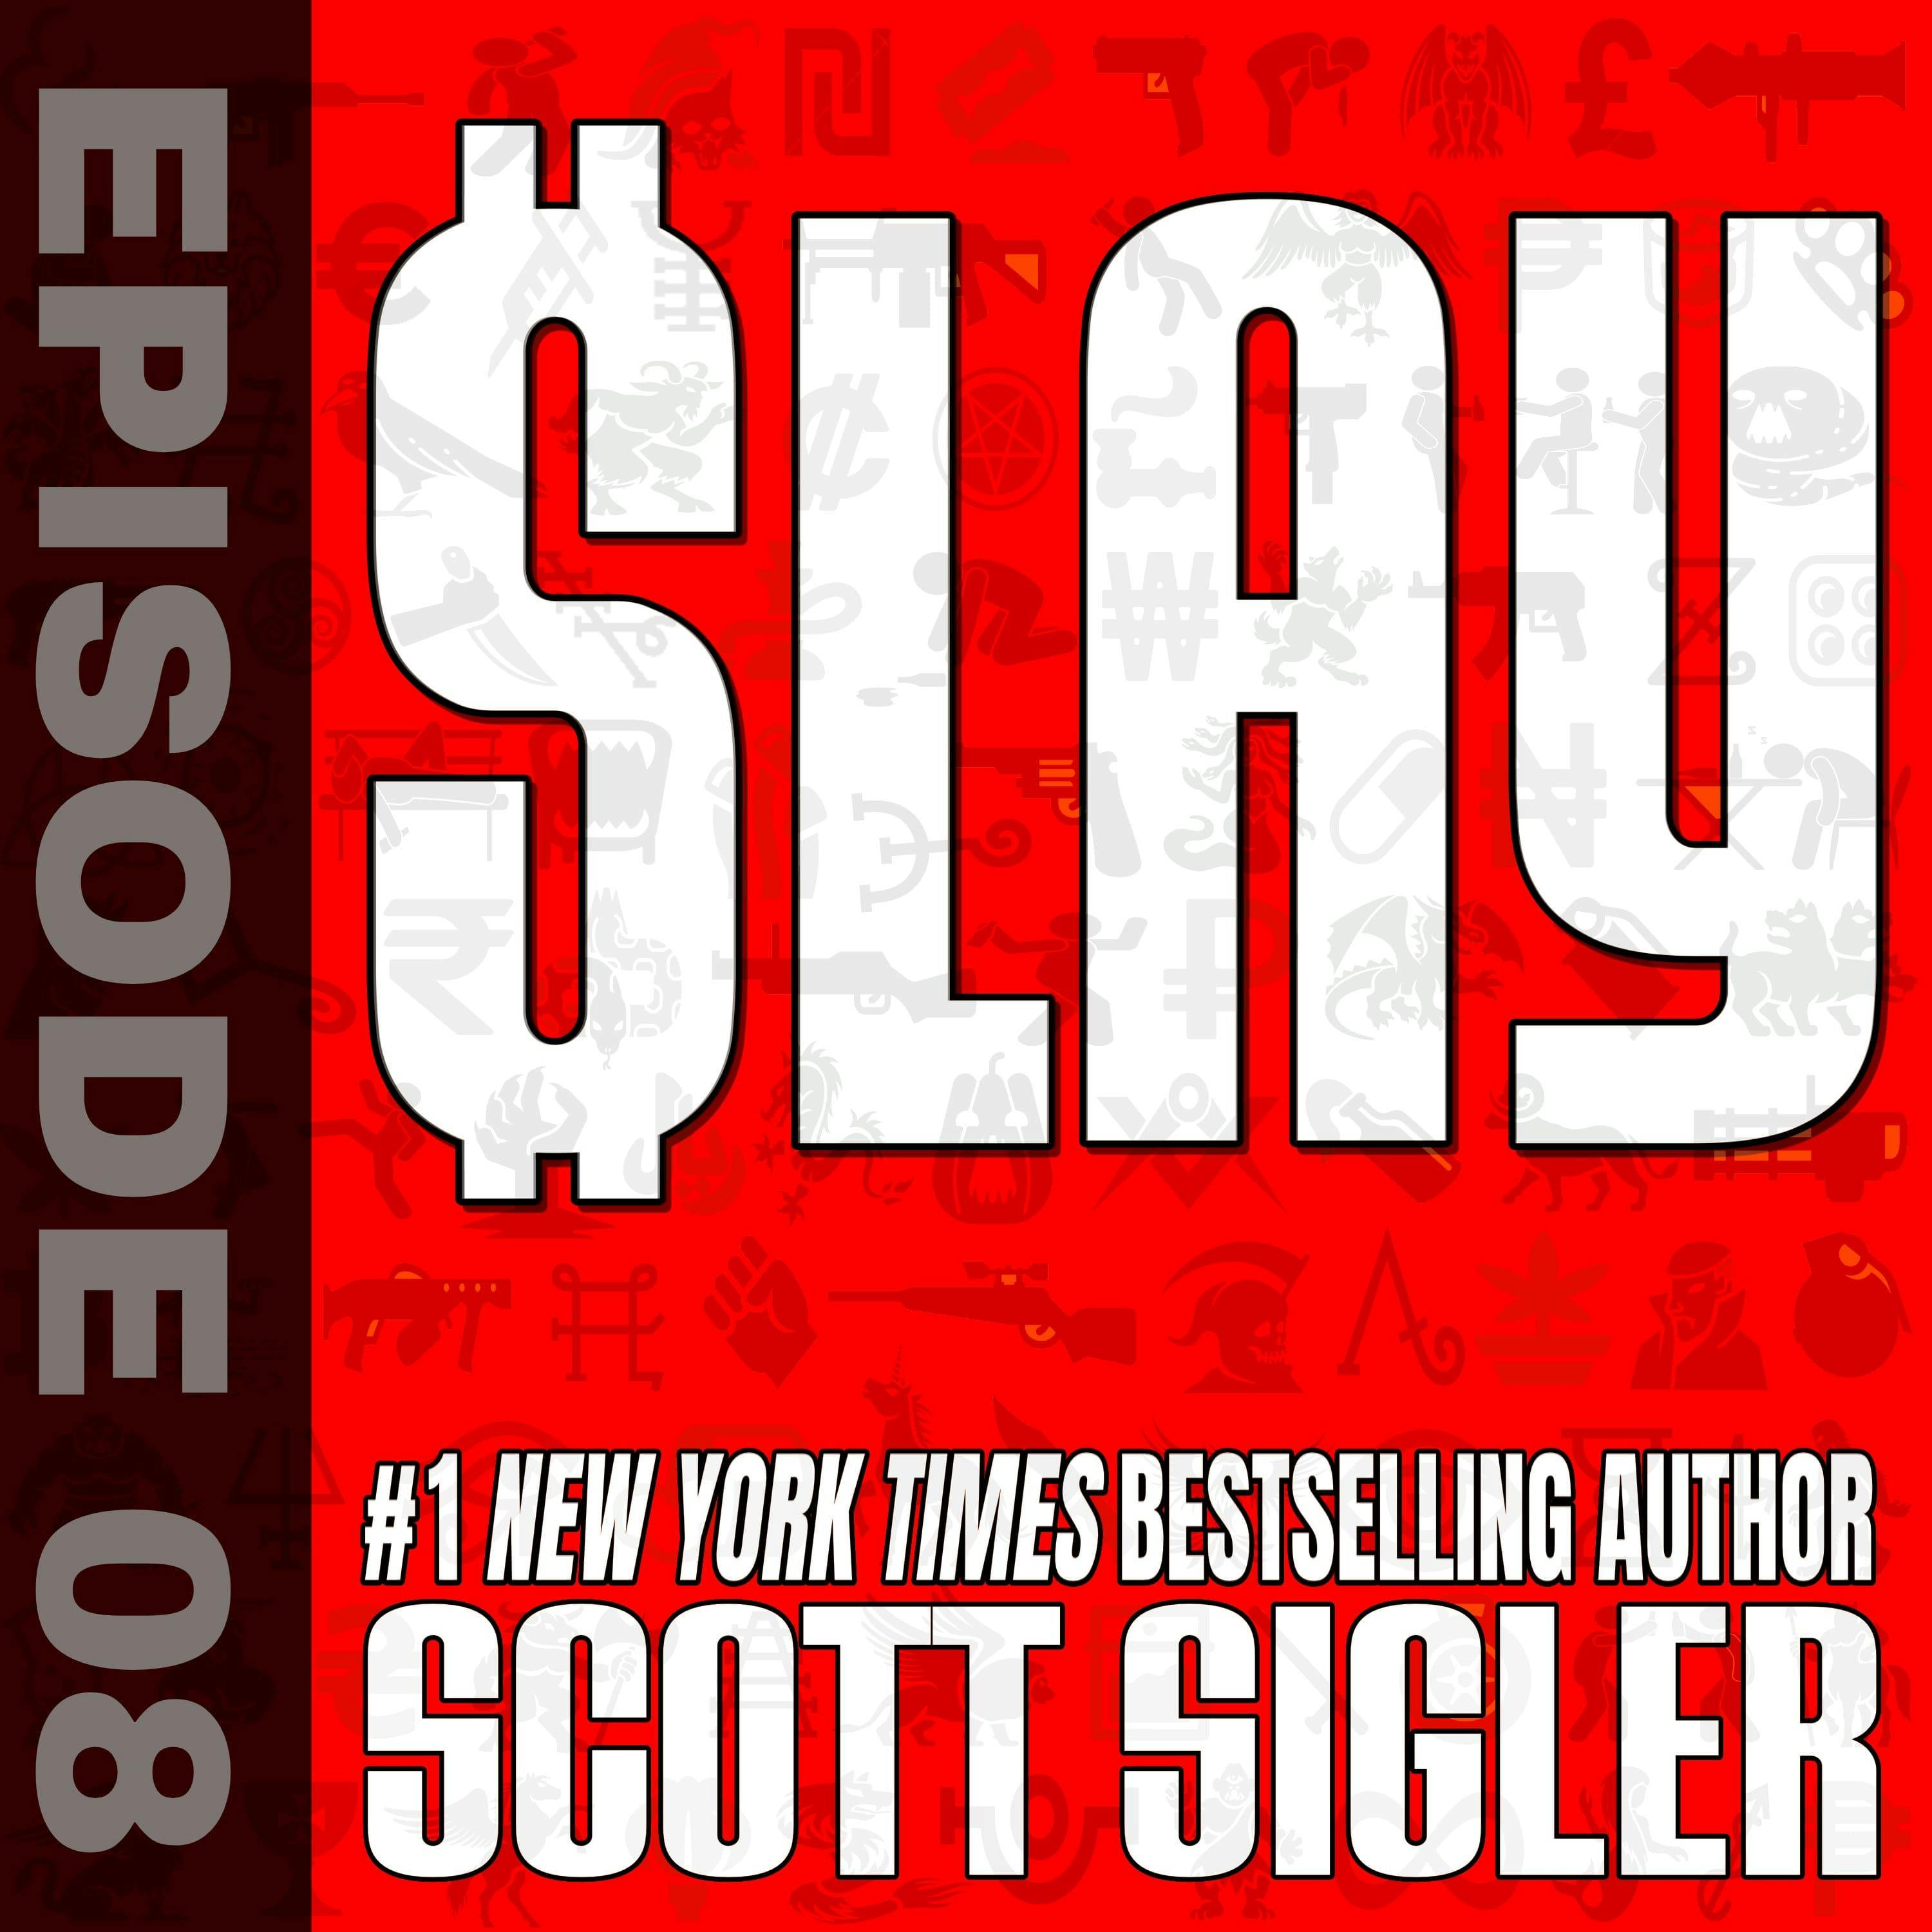 SLAY Episode 8: Do You Even Read, Bro?